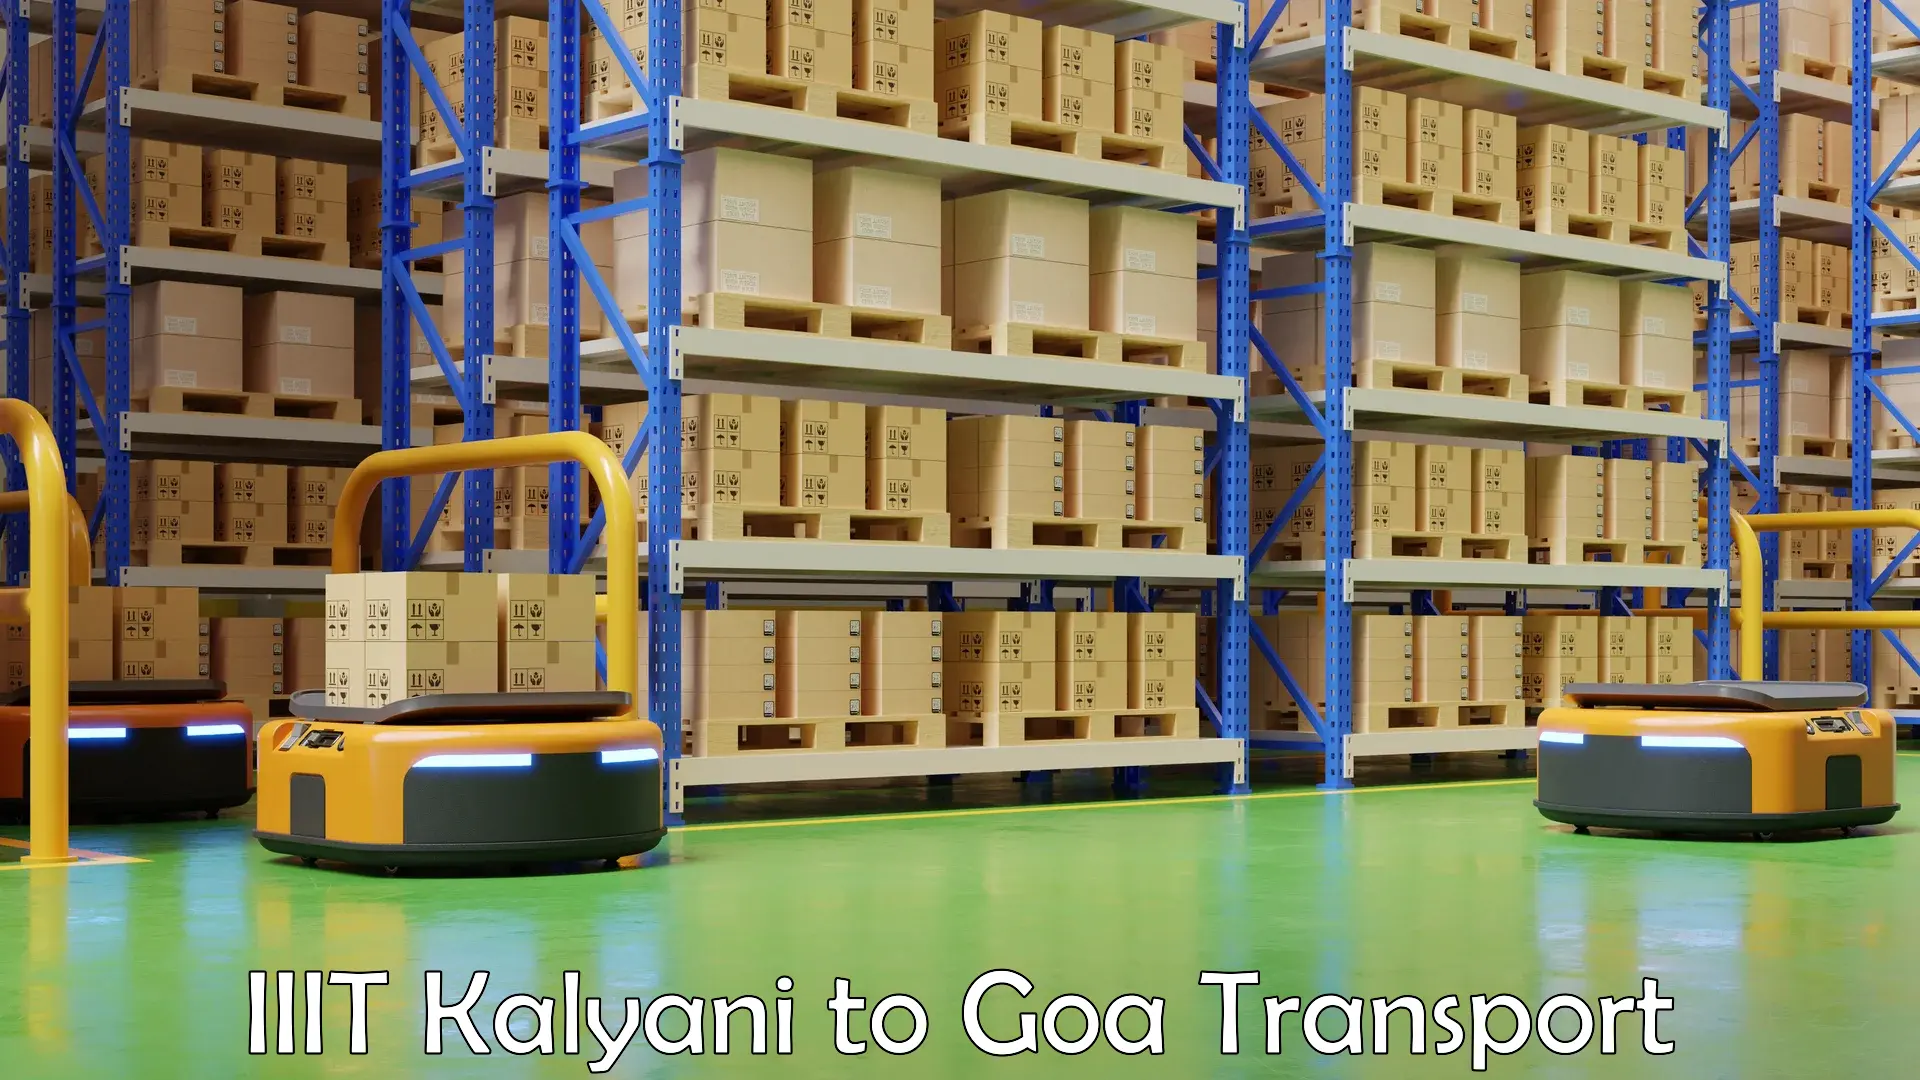 Furniture transport service IIIT Kalyani to Panaji